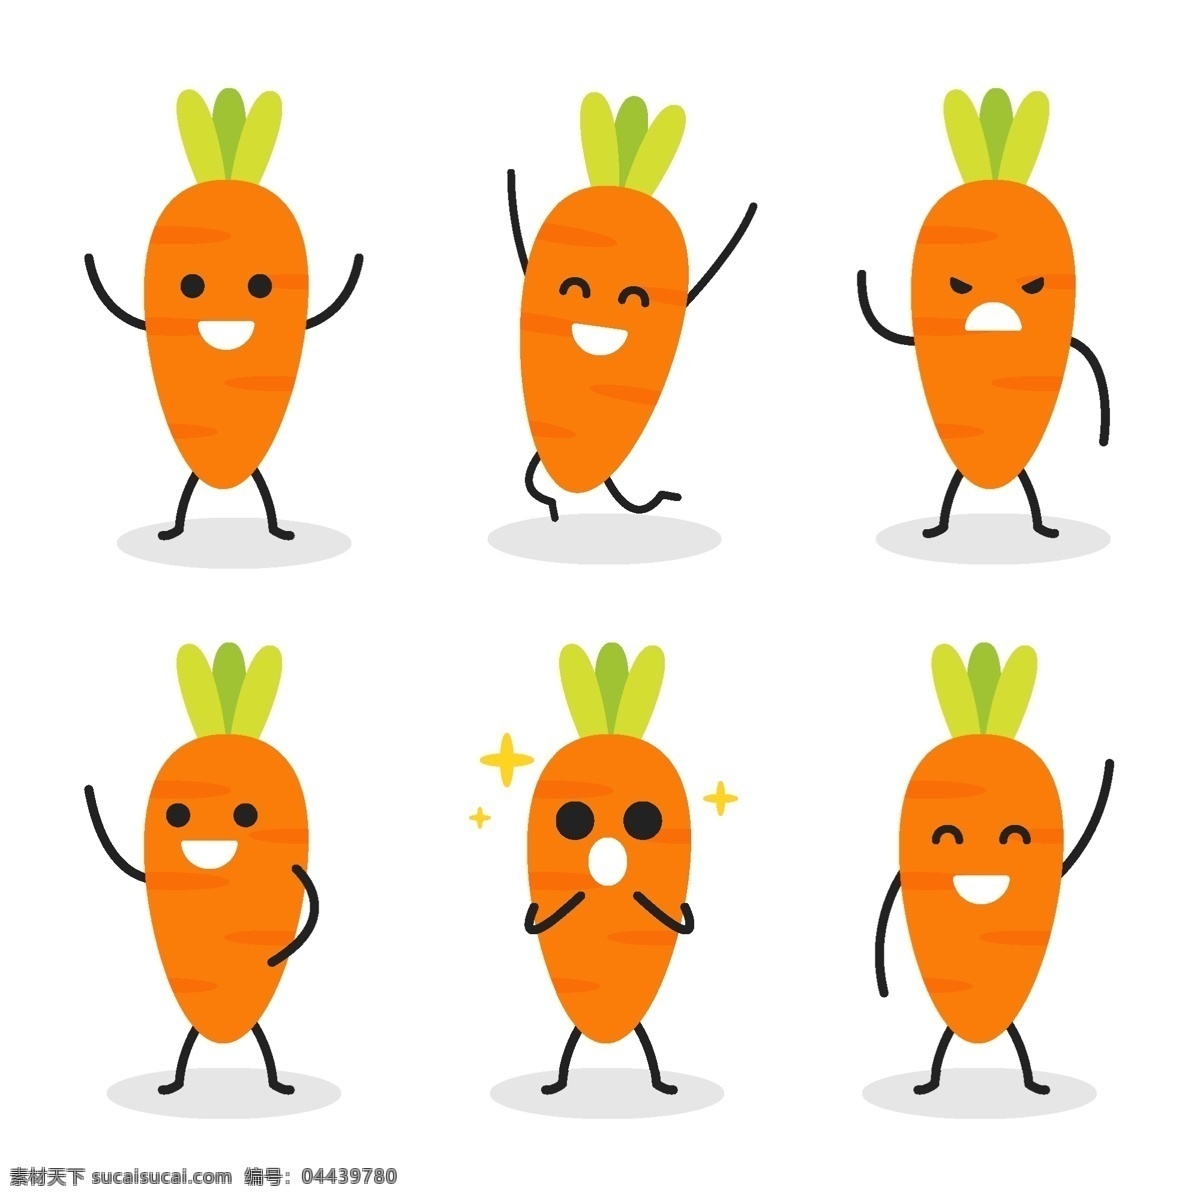 卡通 蔬菜 表情 卡通蔬菜表情 手绘 笑脸 有趣 趣味 卡哇伊 食品蔬菜水果 卡通设计